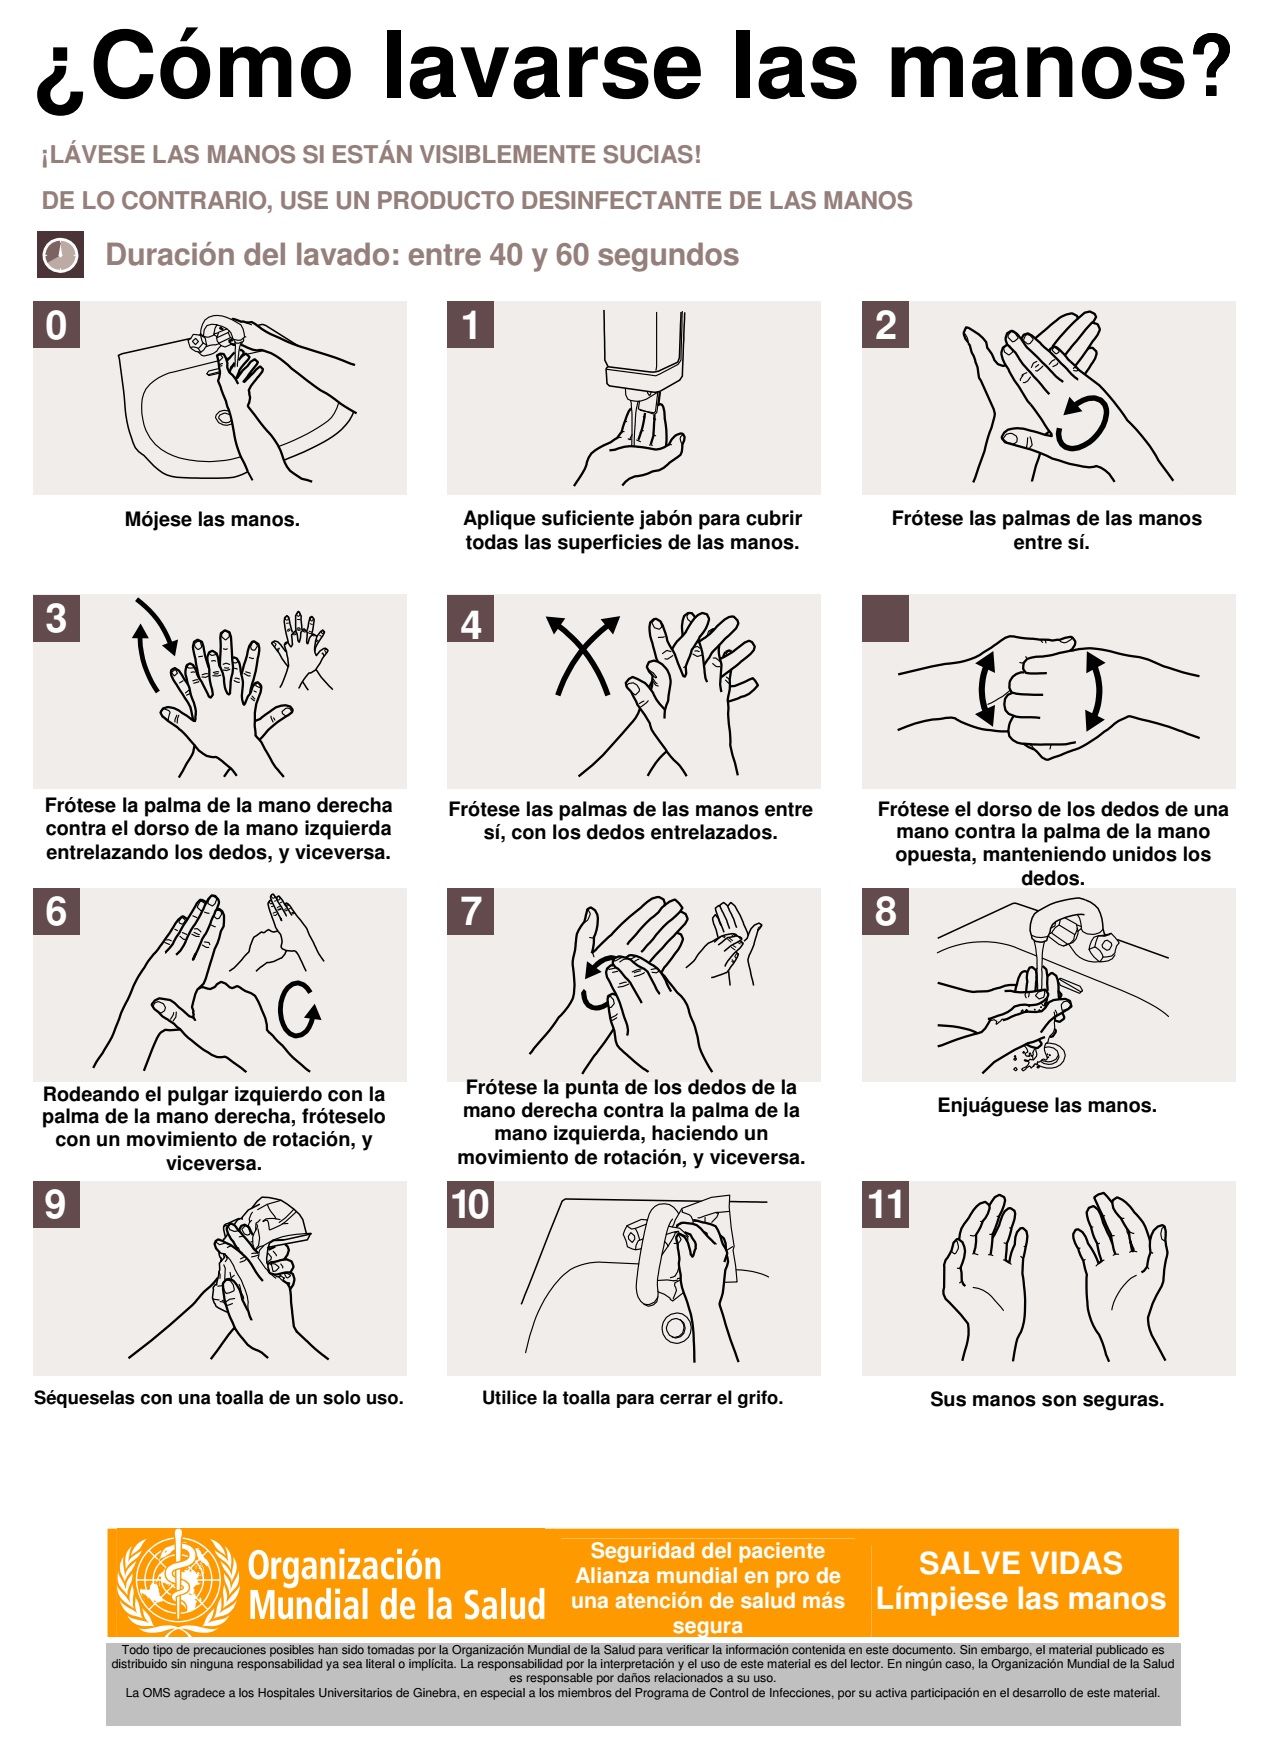 ¿Cómo lavarse las manos correctamente? Paso a paso 2